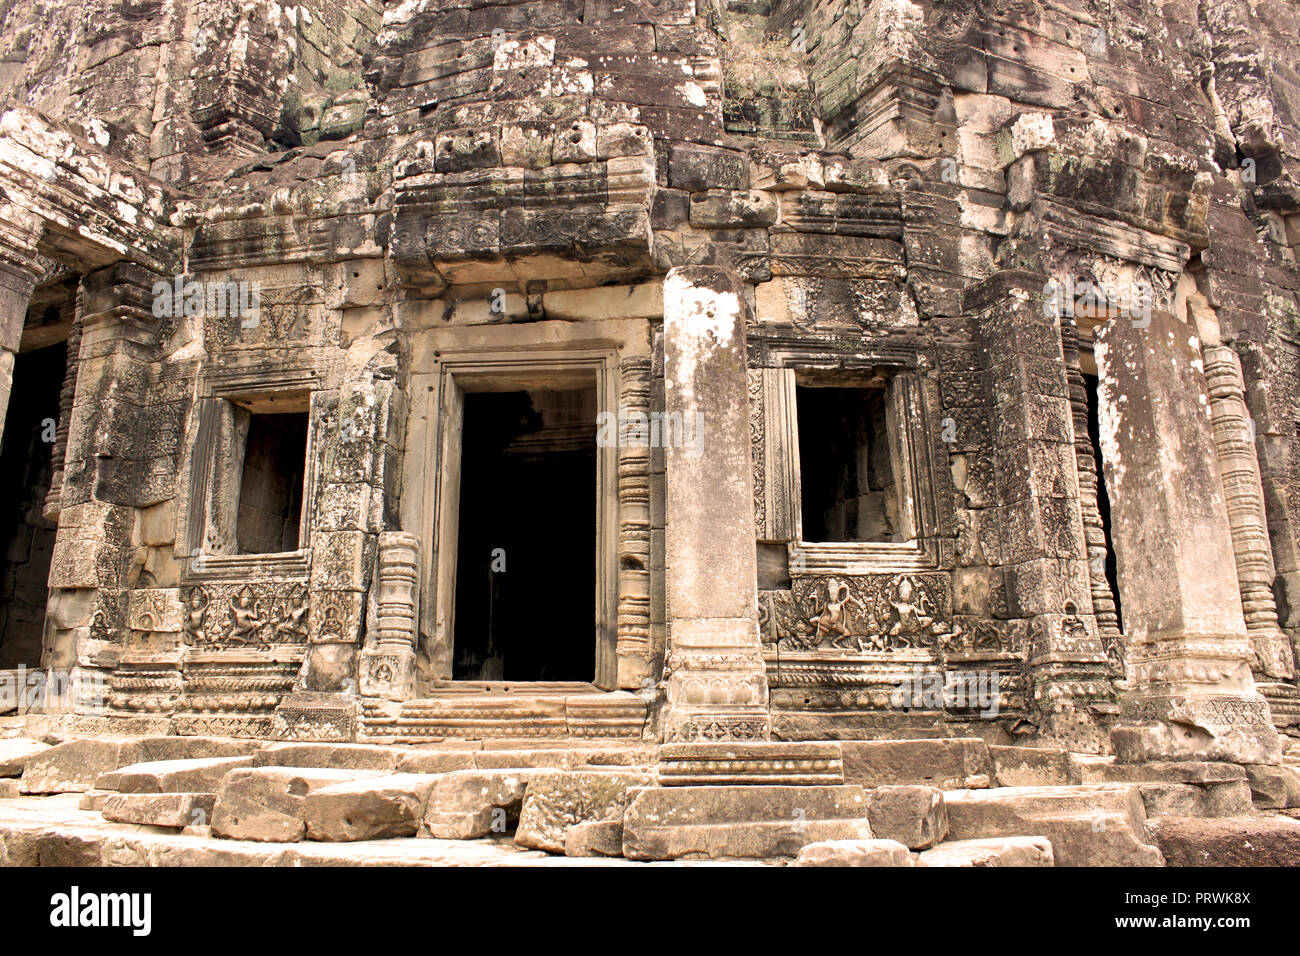 Gebäude der alten Angkor Thom Angkor Bayon Tempel in der Gegend, in der Nähe von Siem Reap, Kambodscha, Asien. Buddhistische Kloster aus dem 12. Jahrhundert. Stockfoto